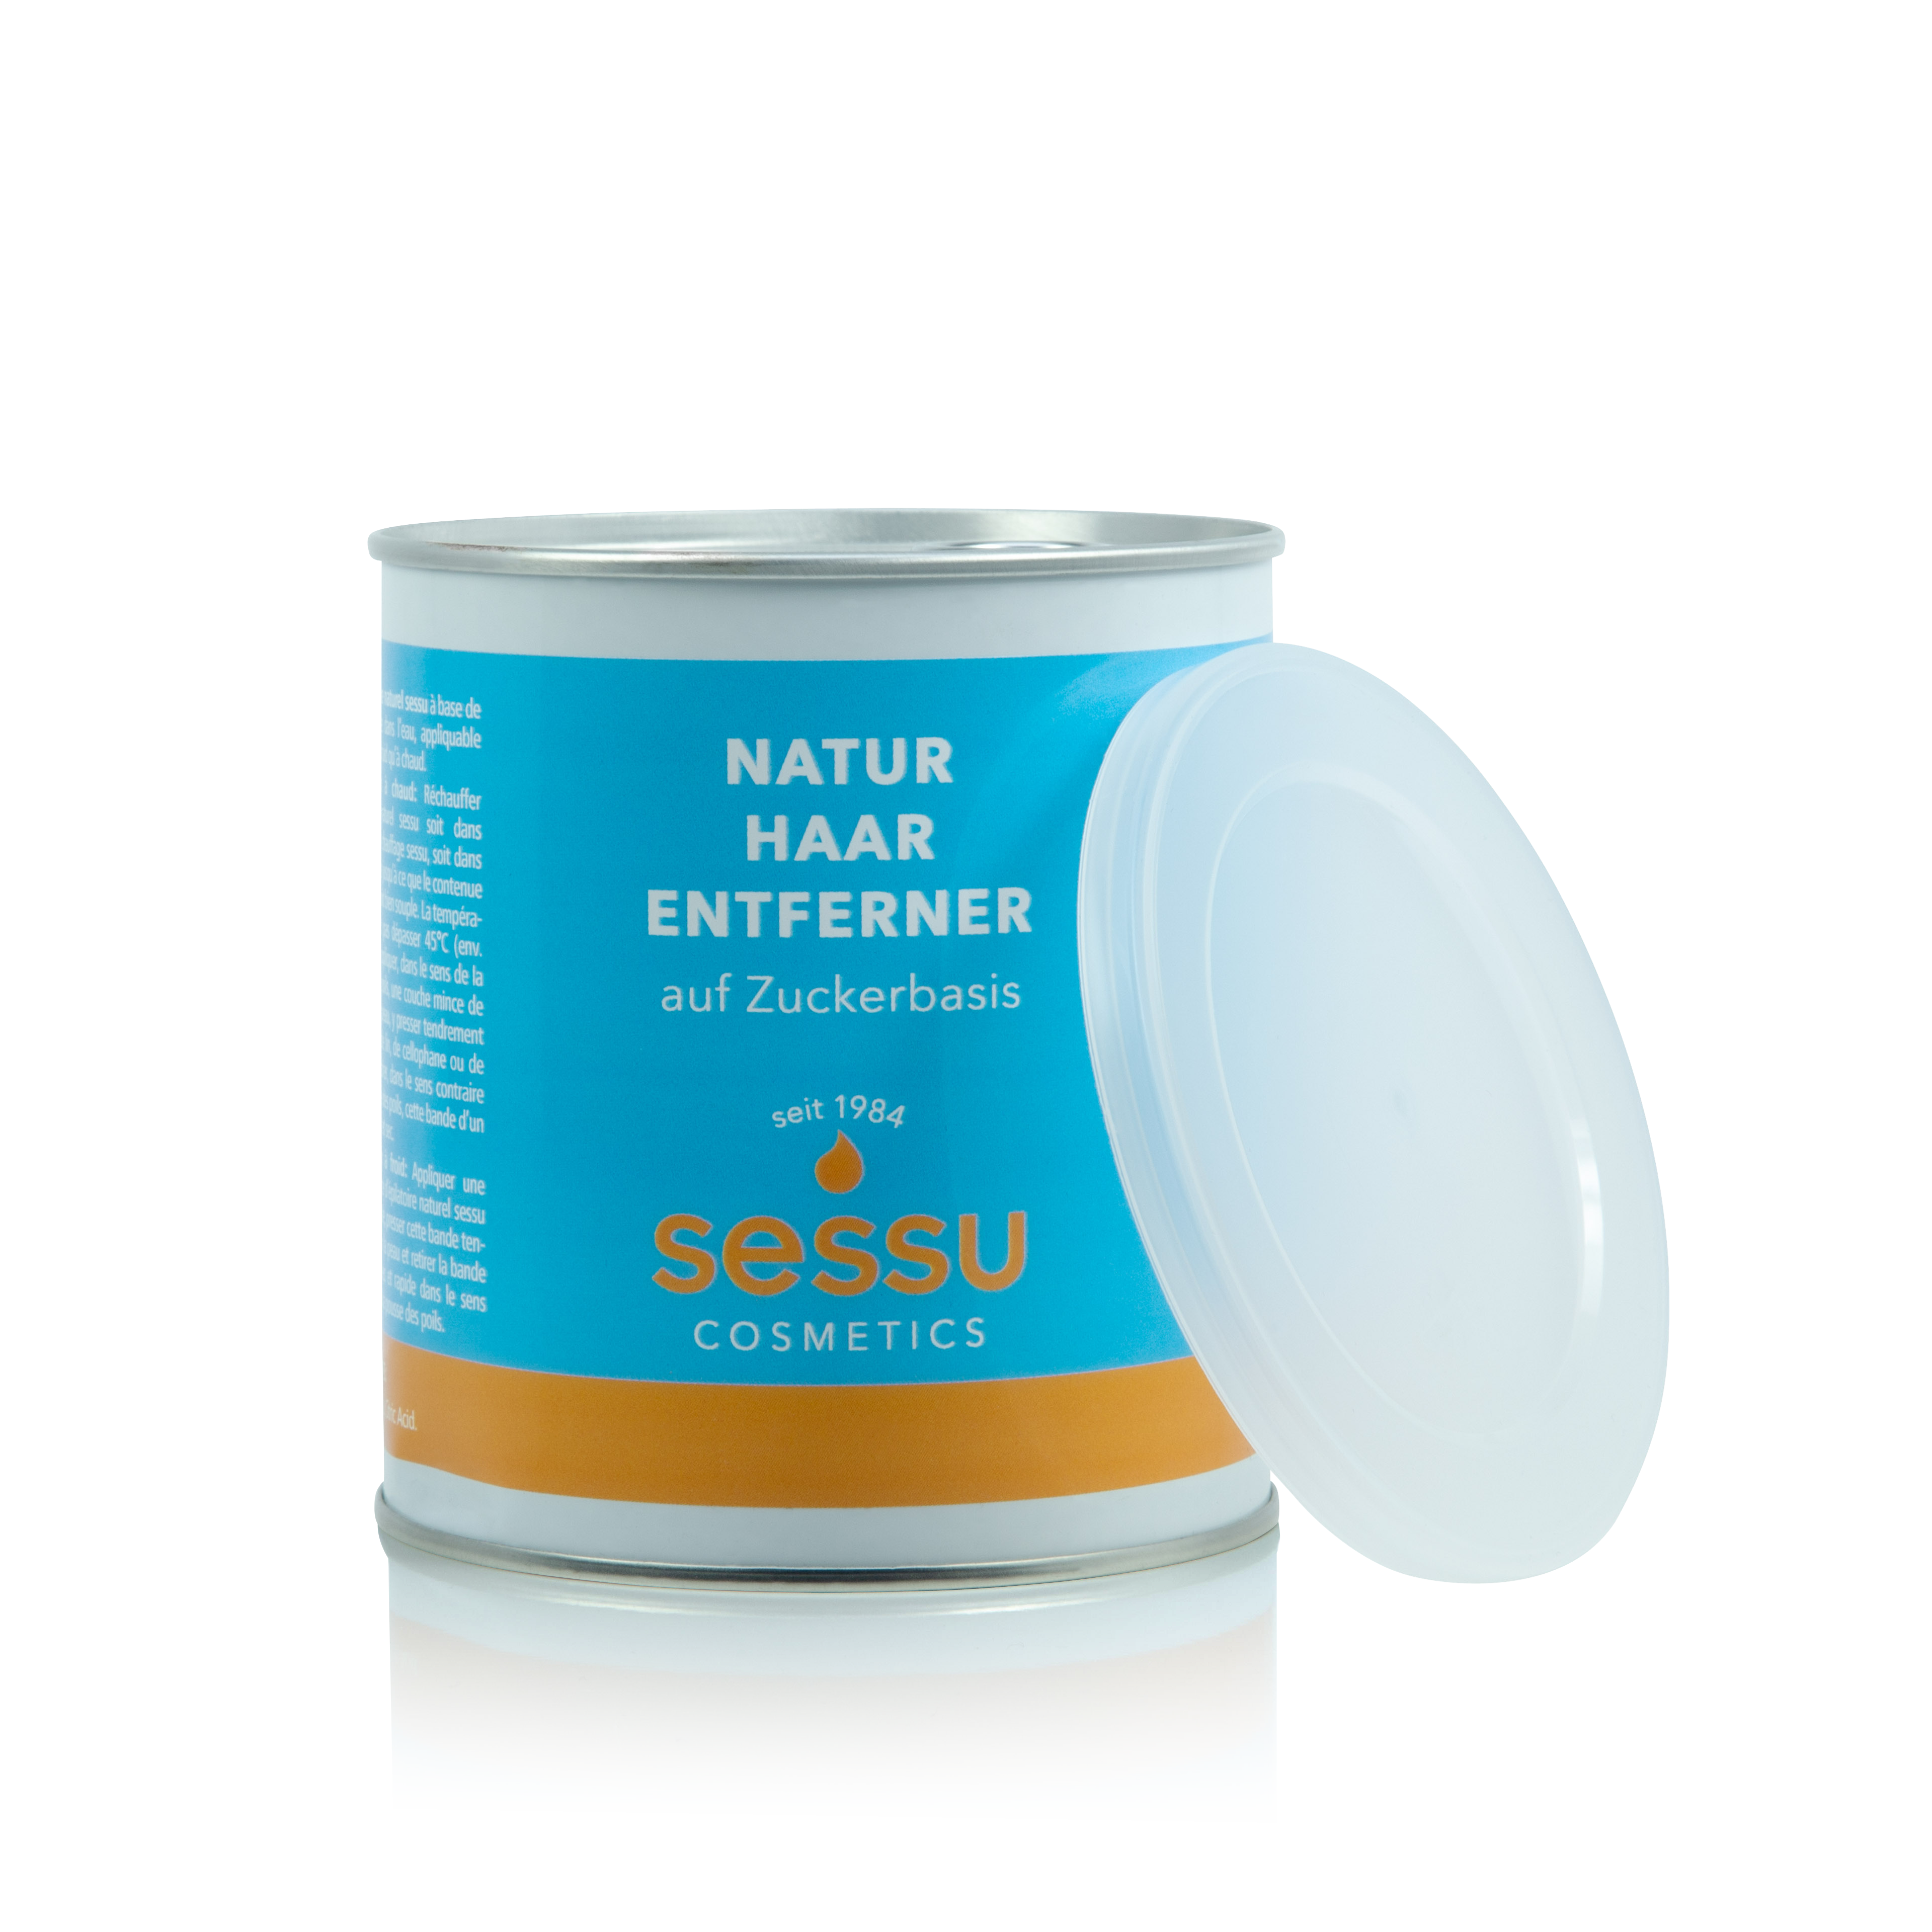 sessu-natur-haarentferner-dose_19835_1